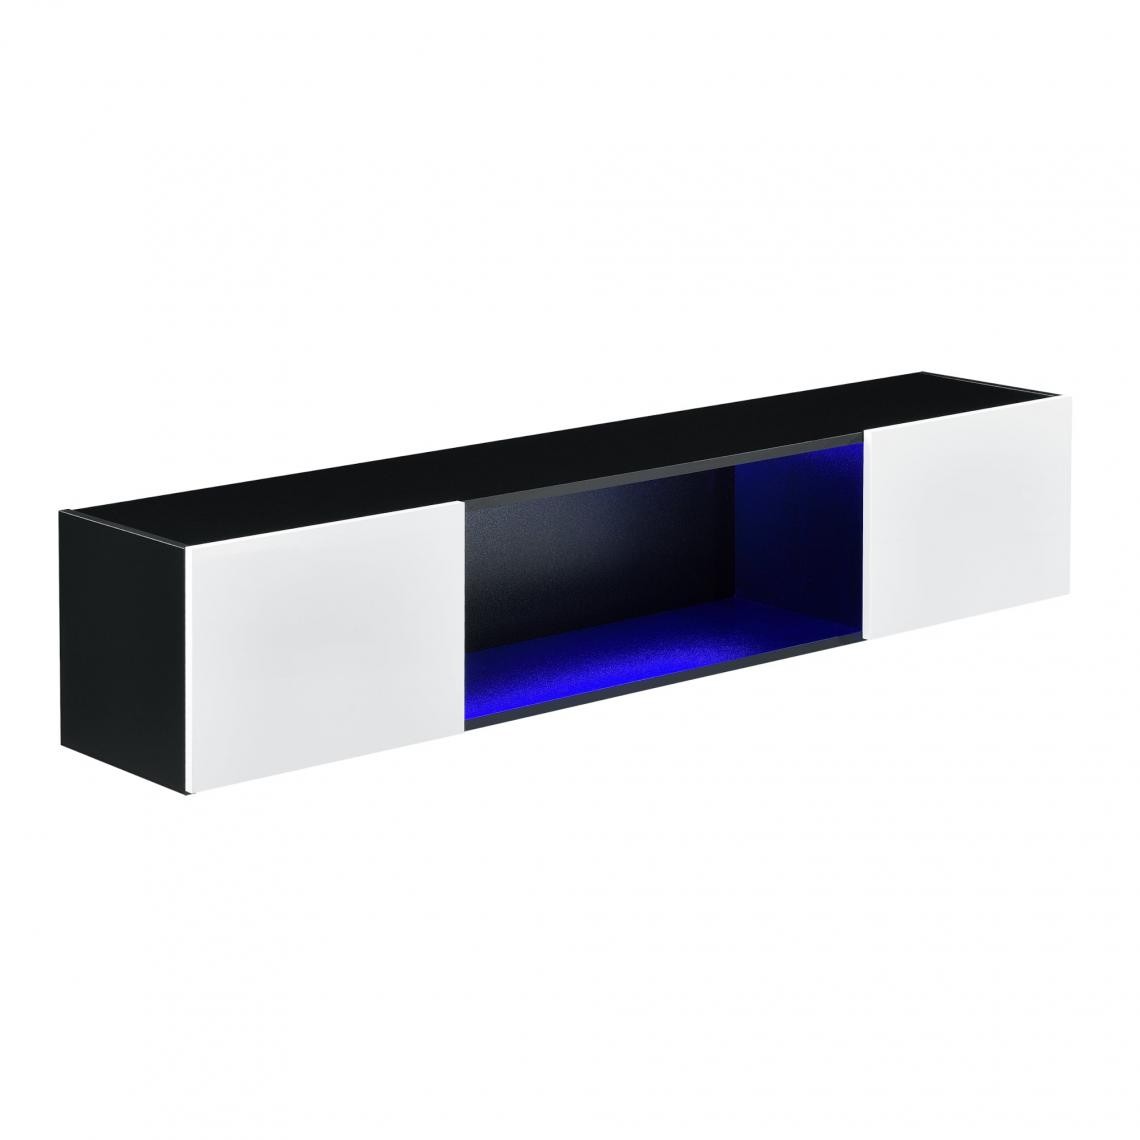 Helloshop26 - Étagère Murale Stylée Meuble de Rangement Design avec 2 Portes et Éclairage LED Bleu Capacité de Charge jusqu'à 15 kg Panneau de Particules 150 x 30 x 30 cm Noir Blanc Brillant 03_0005195 - Etagères